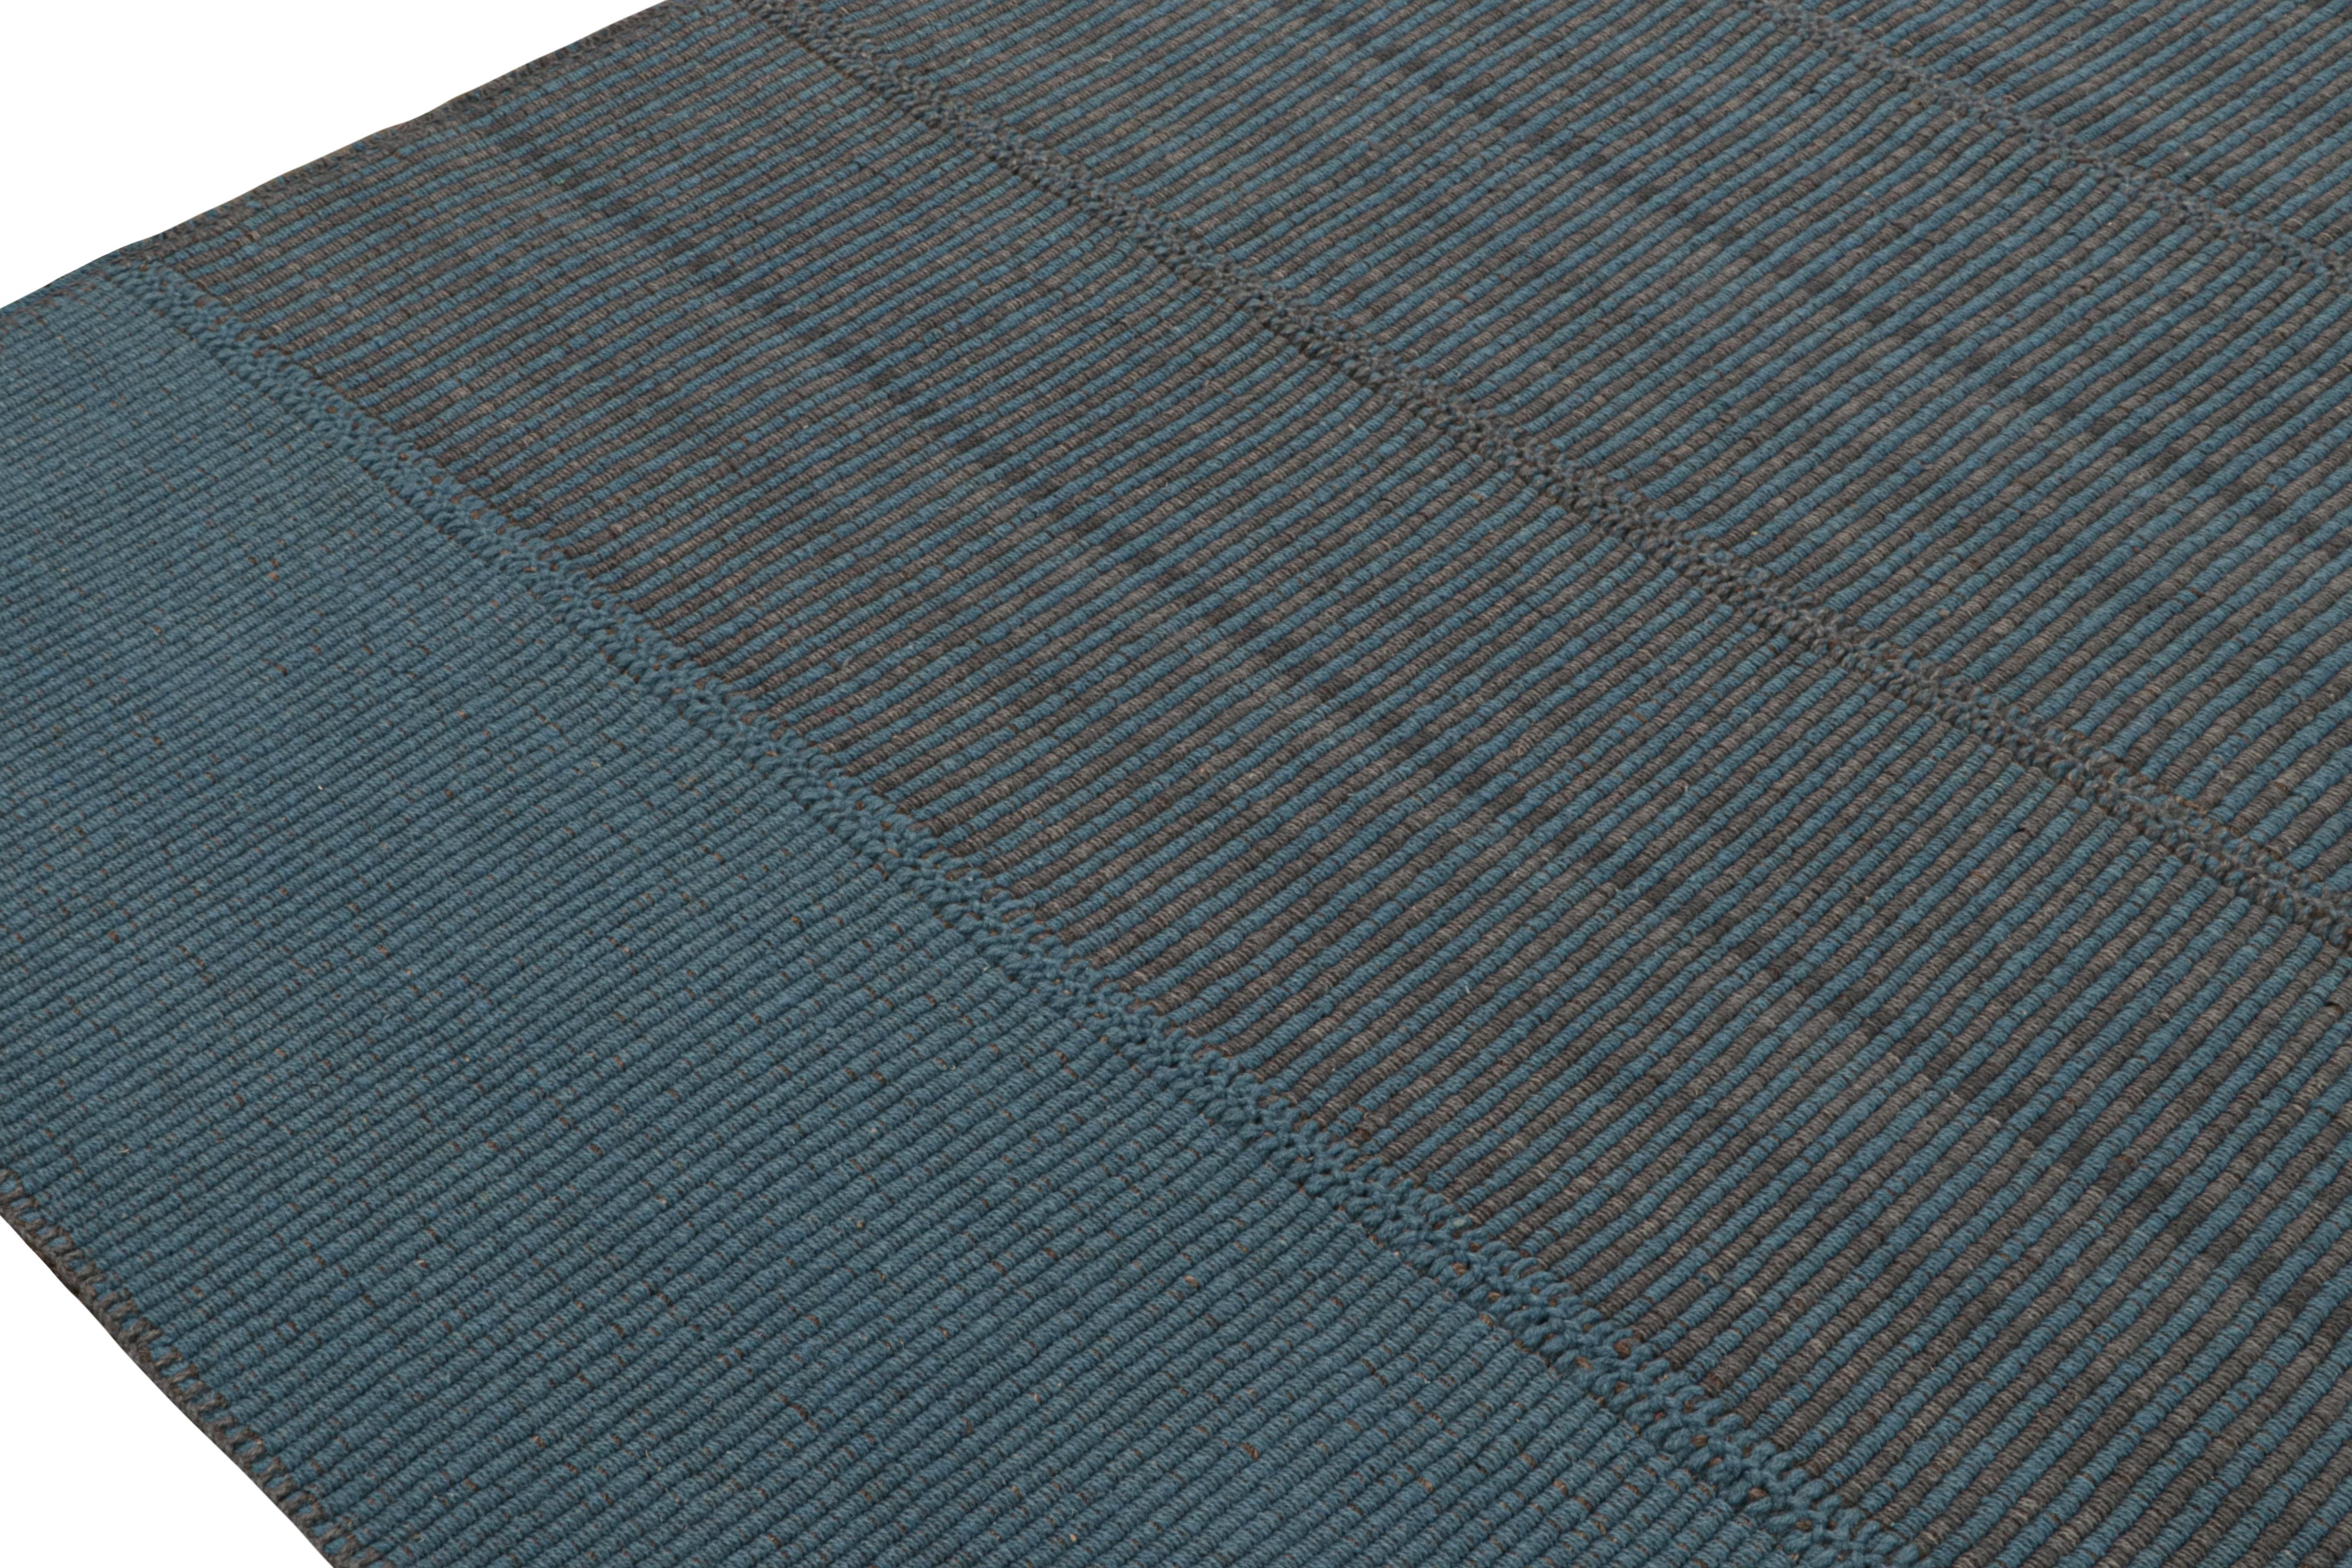 Rug & Kilim's Contemporary Kilim in Blue with Gray Stripes and Brown Accents (Kilim contemporain en bleu avec des rayures grises et des accents bruns) Neuf - En vente à Long Island City, NY